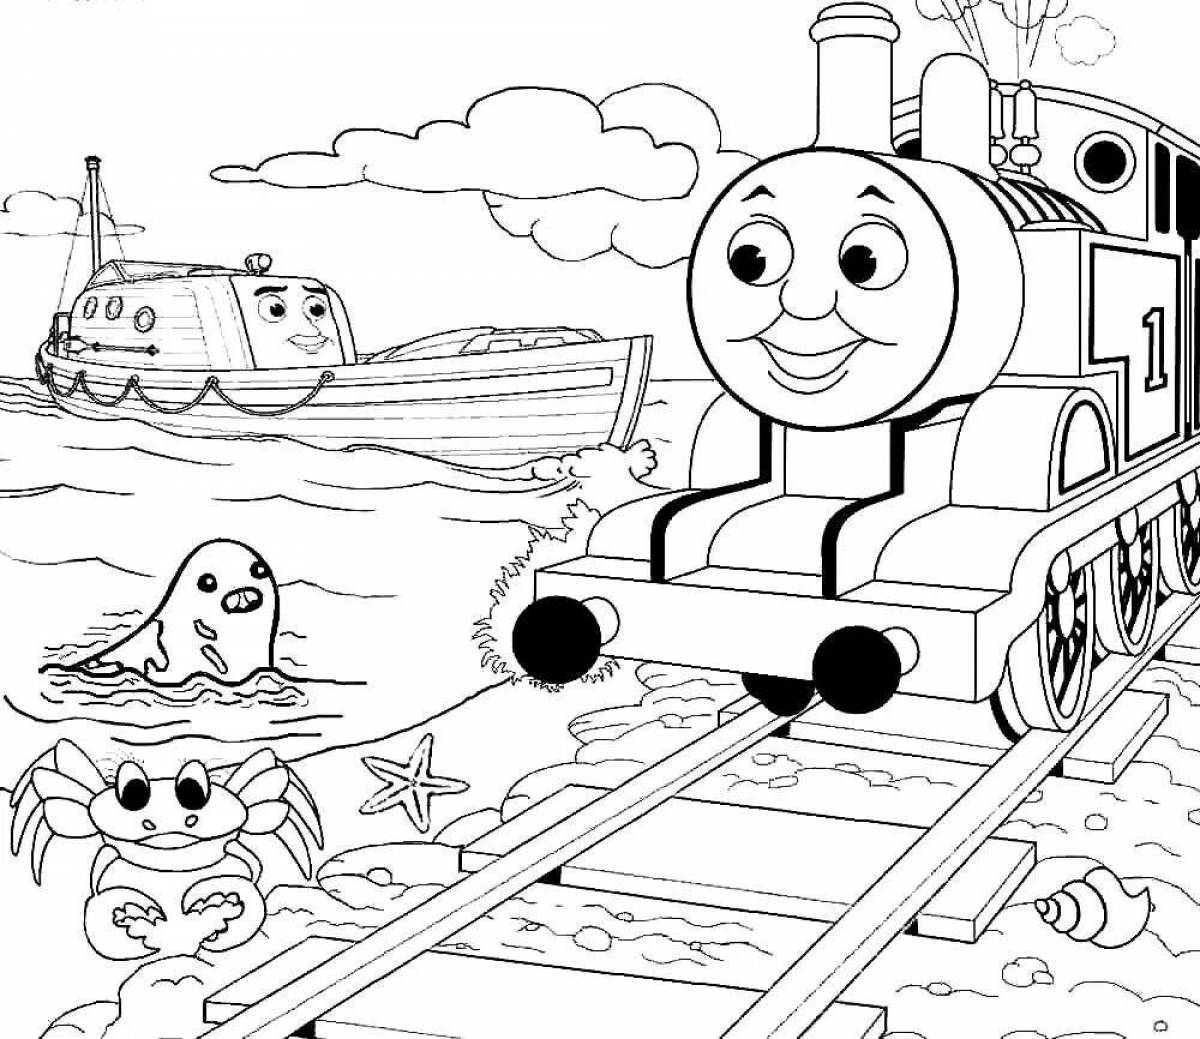 Cute thomas locomotive coloring page